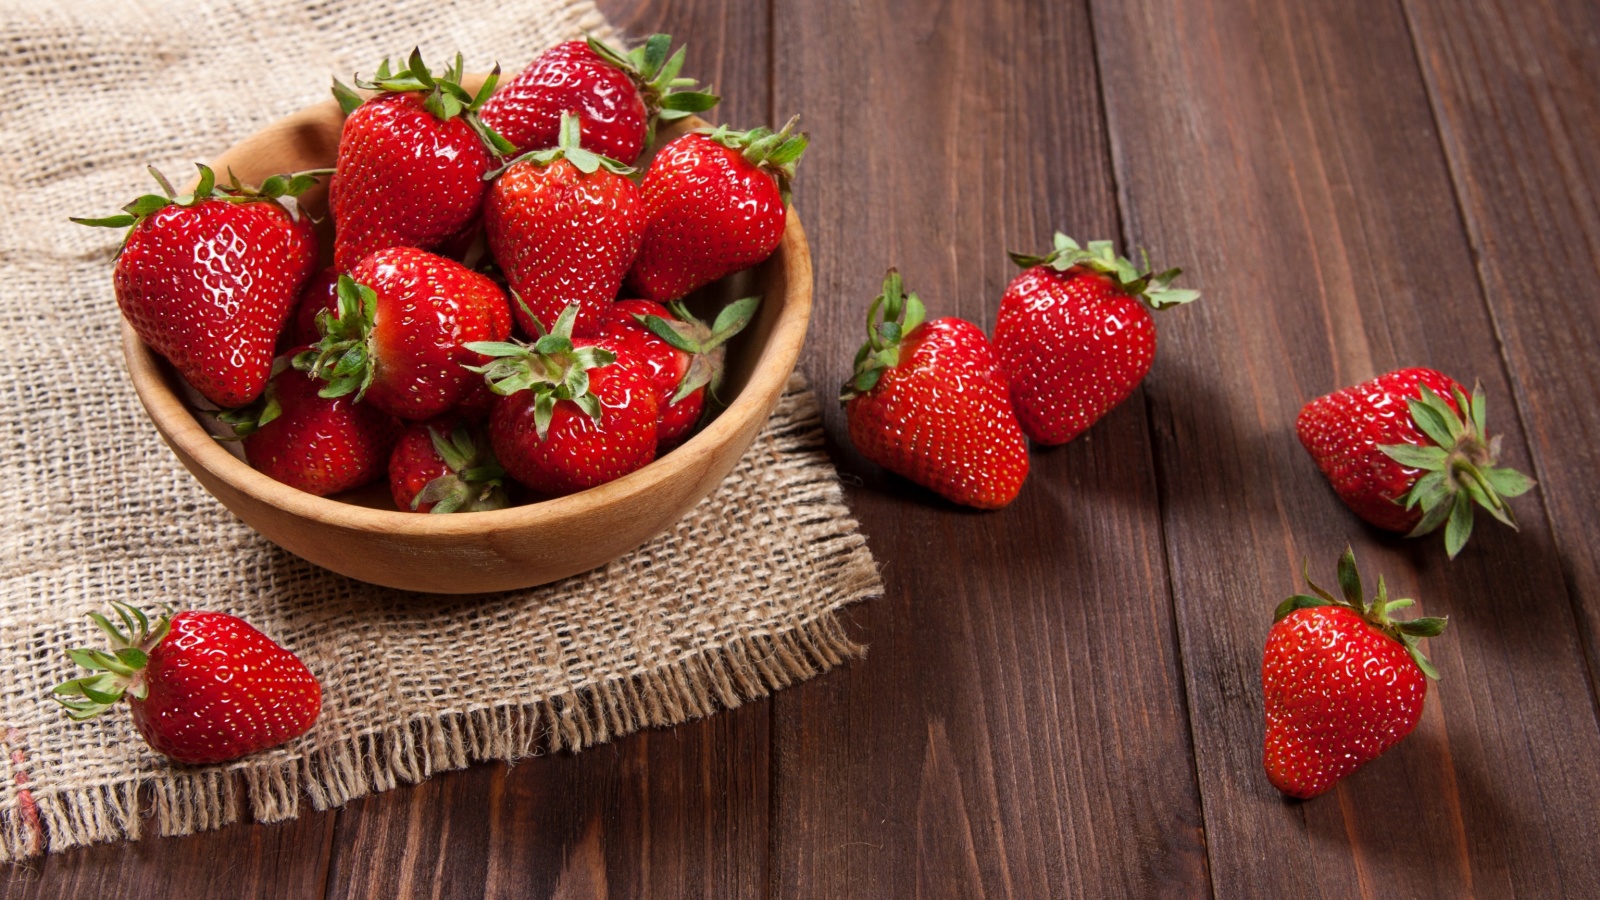 Sfondi Basket fragrant fresh strawberries 1600x900